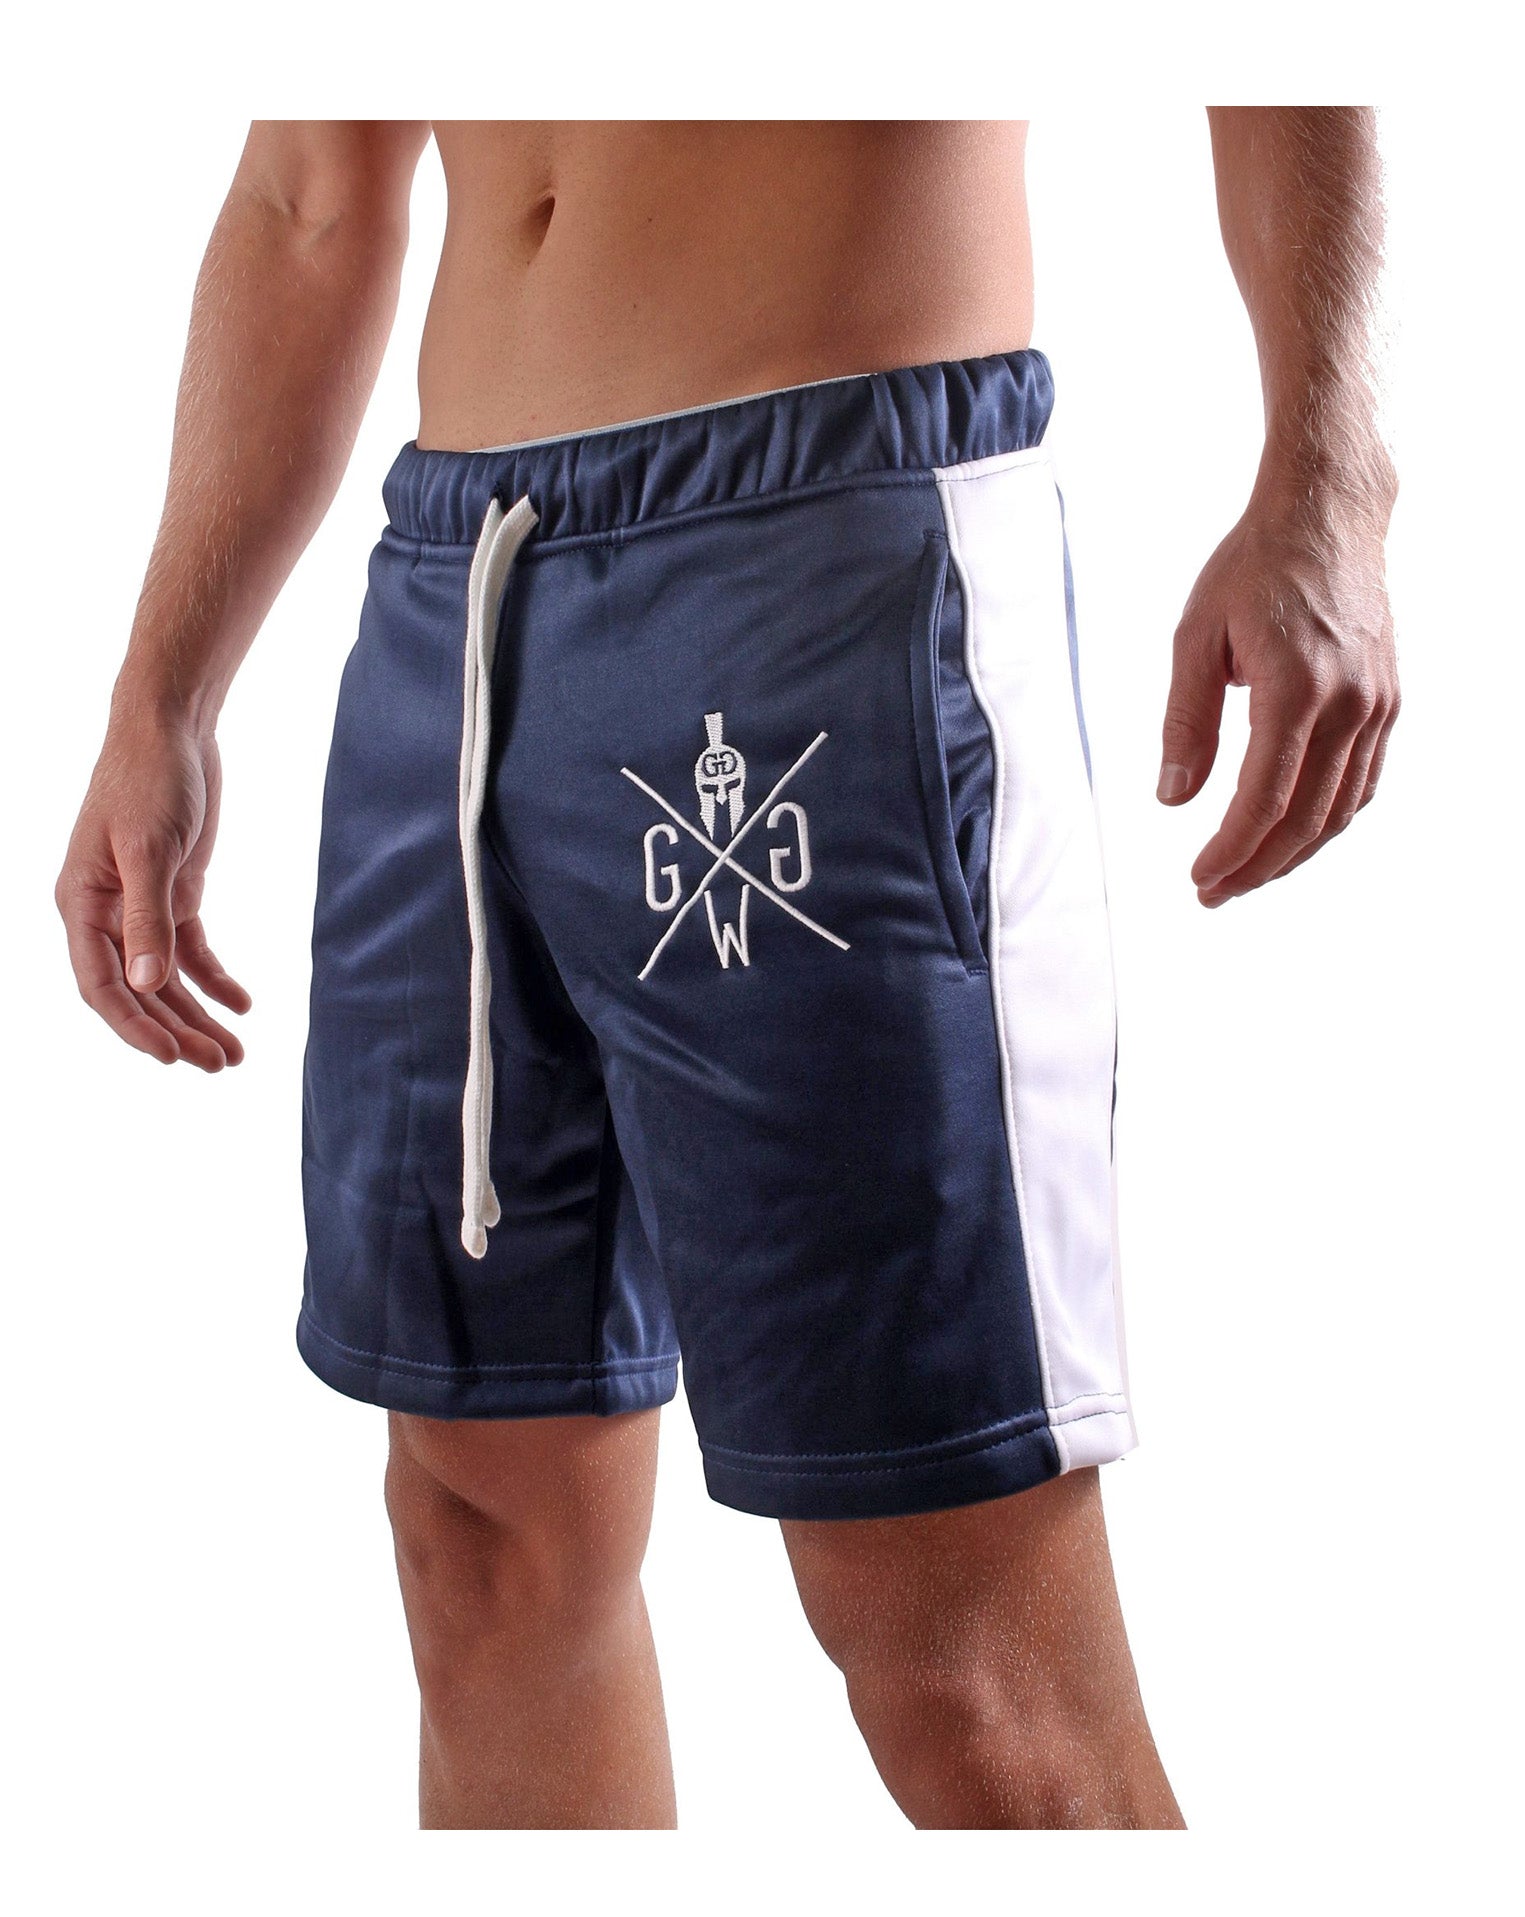 Shorts deportivos para hombre | Pantalones deportivos cortos para fitness y ocio. Gym